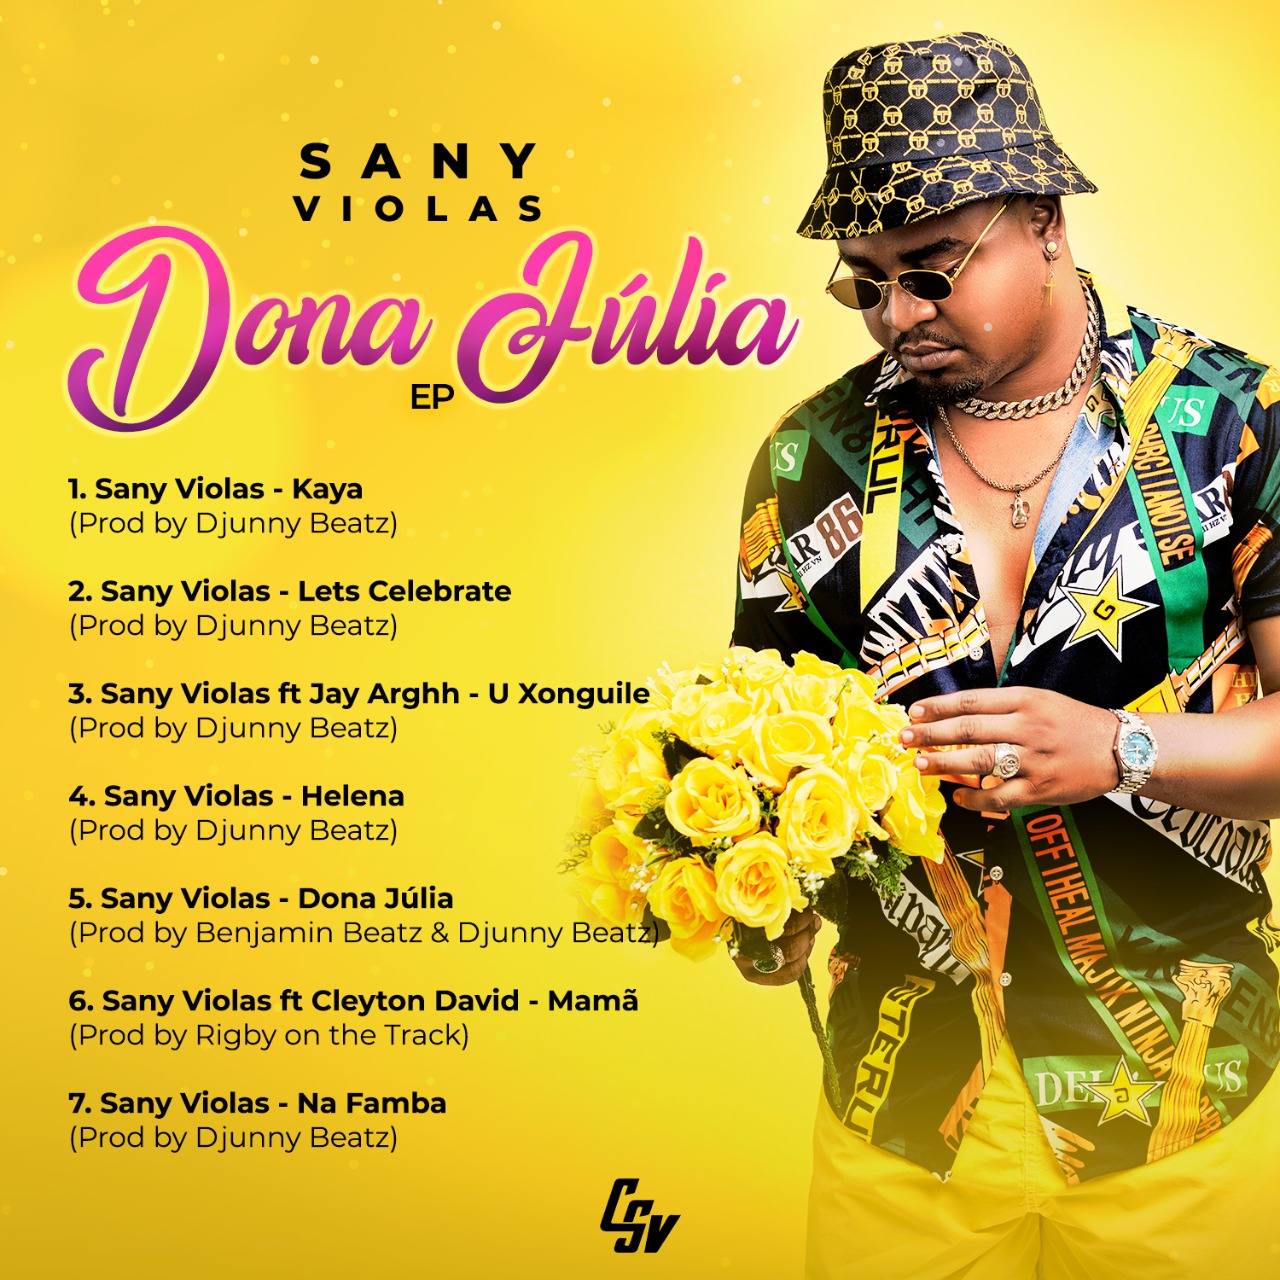 Sany Violas – Mama (feat. Cleyton David)